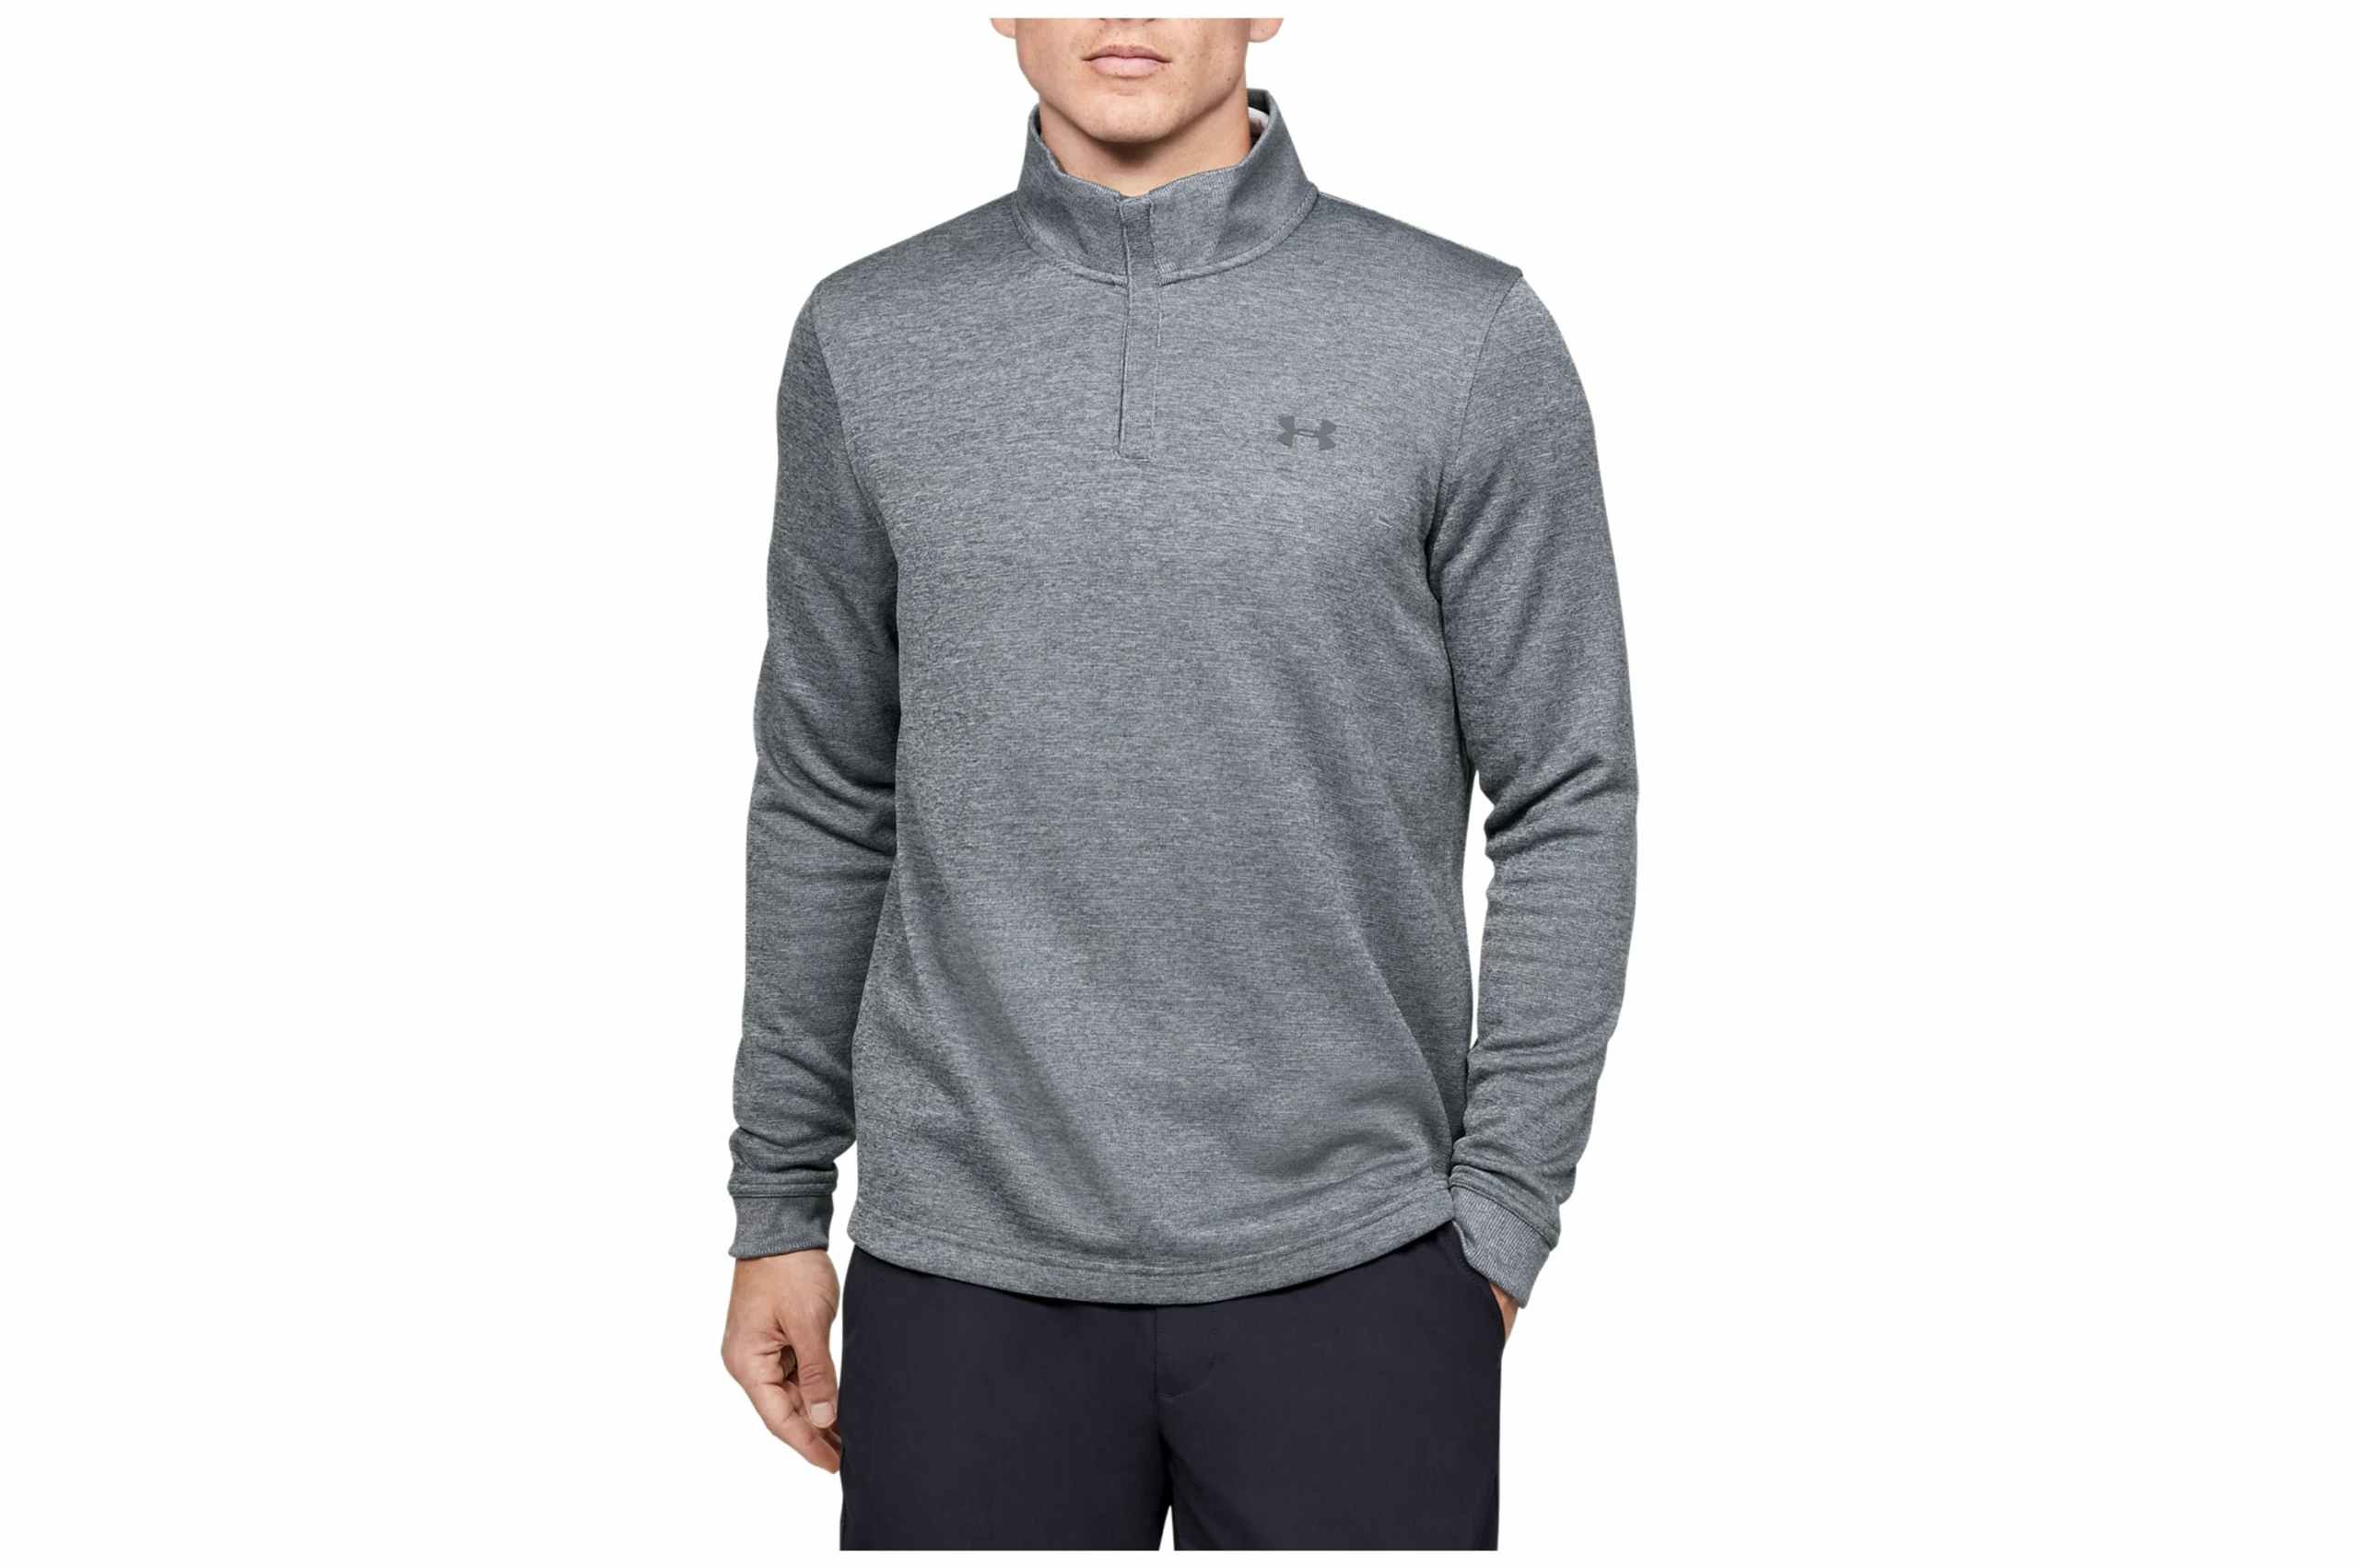 UA Men's Storm SweaterFleece 1/4 Zip